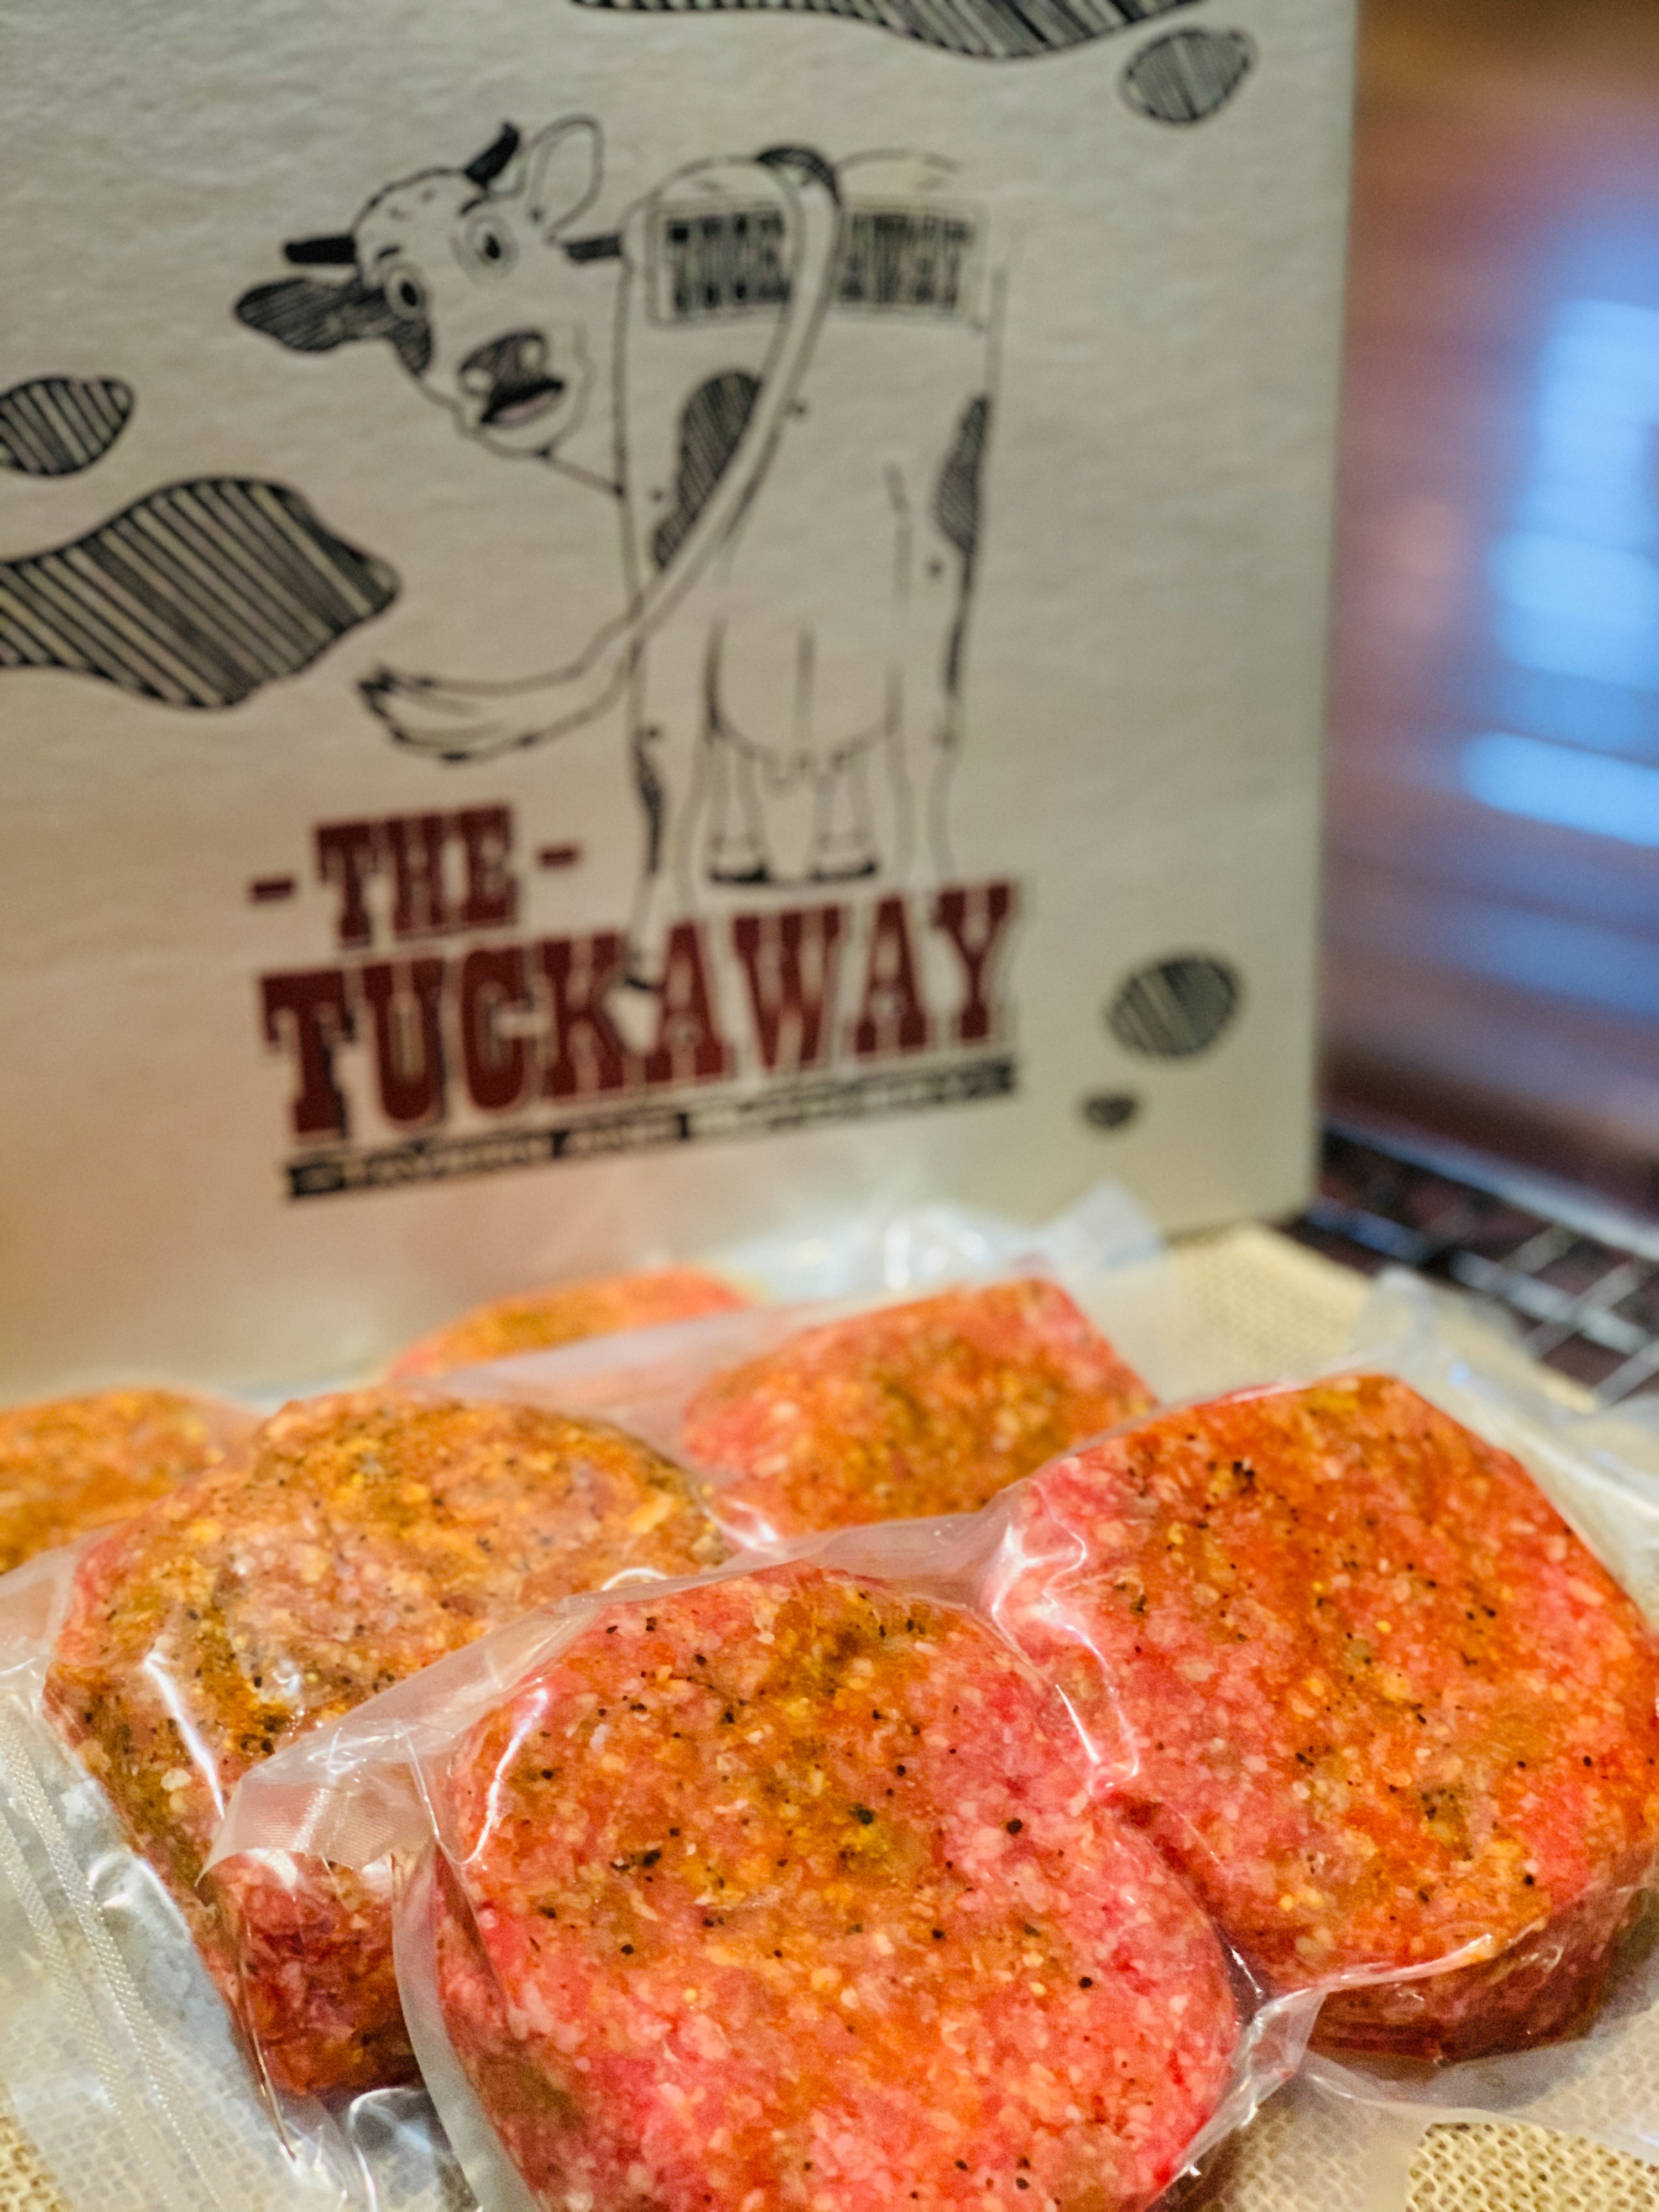 Tuckaway Tavern and Butchery – Tuckin' Good